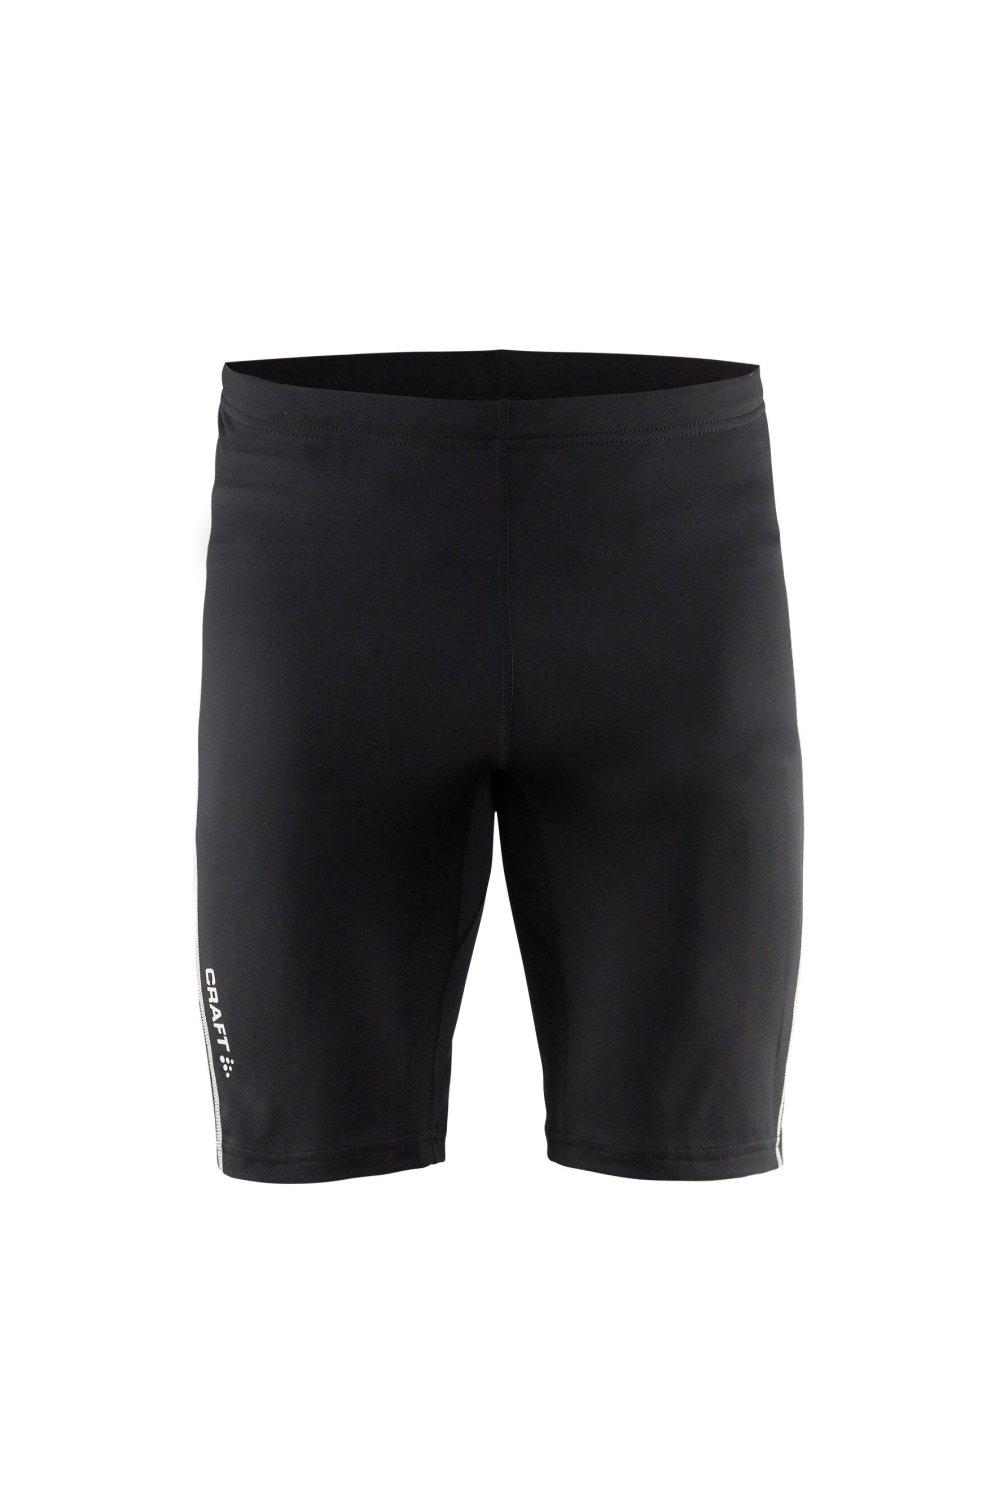 Разум короткие колготки CRAFT, черный шорты для фитнеса nike размер s черный